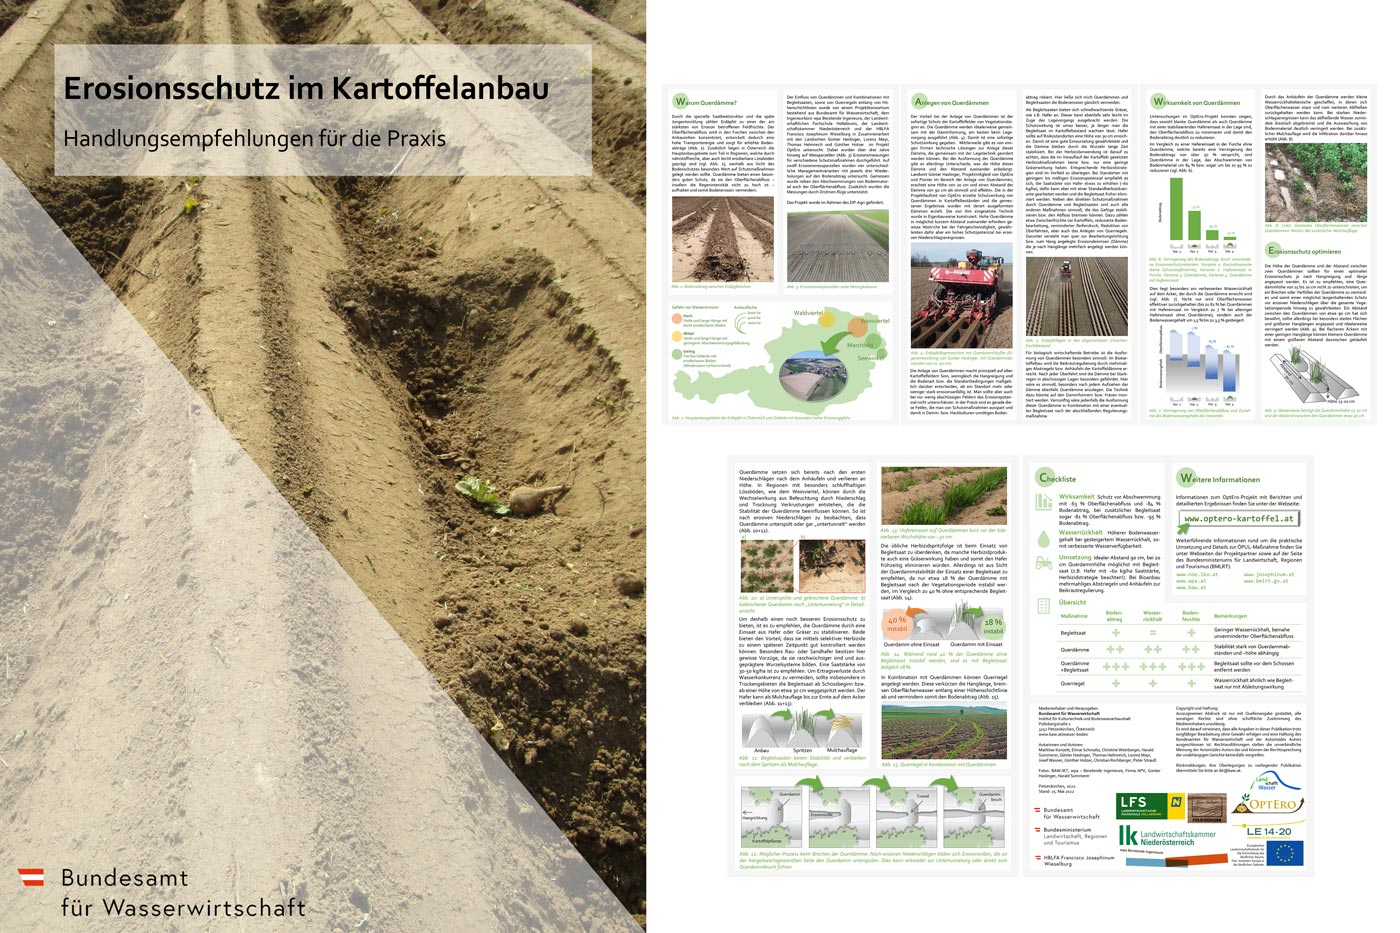 Featured image for “Handbuch zum Erosionsschutz im Kartoffelanbau”